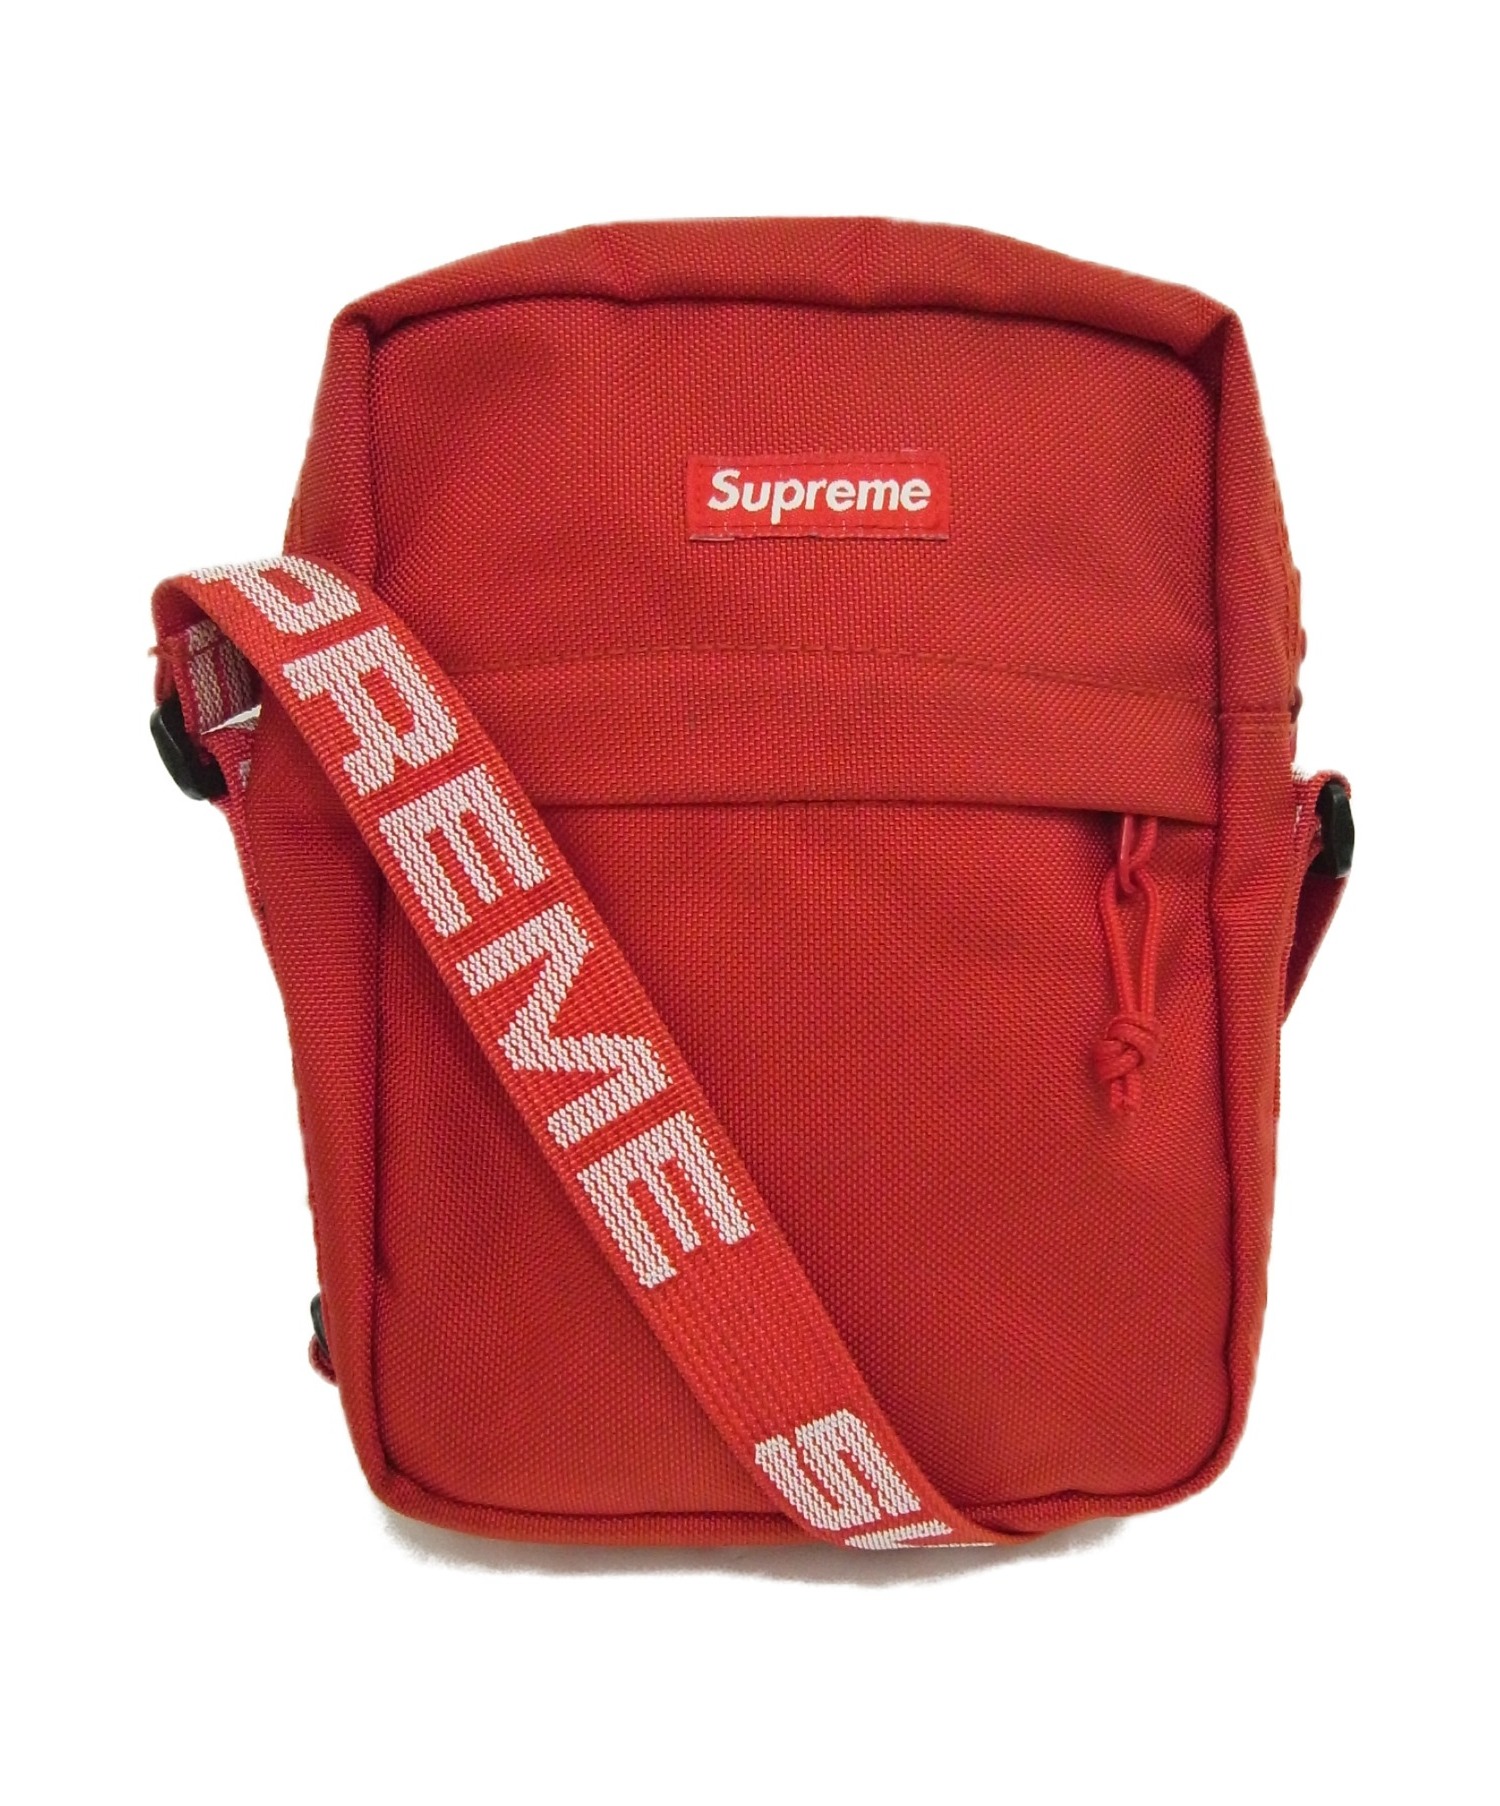 Supreme (シュプリーム) ボックスナイロンショルダーバッグ レッド サイズ:下記参照 18SSモデル Shoulder Bag